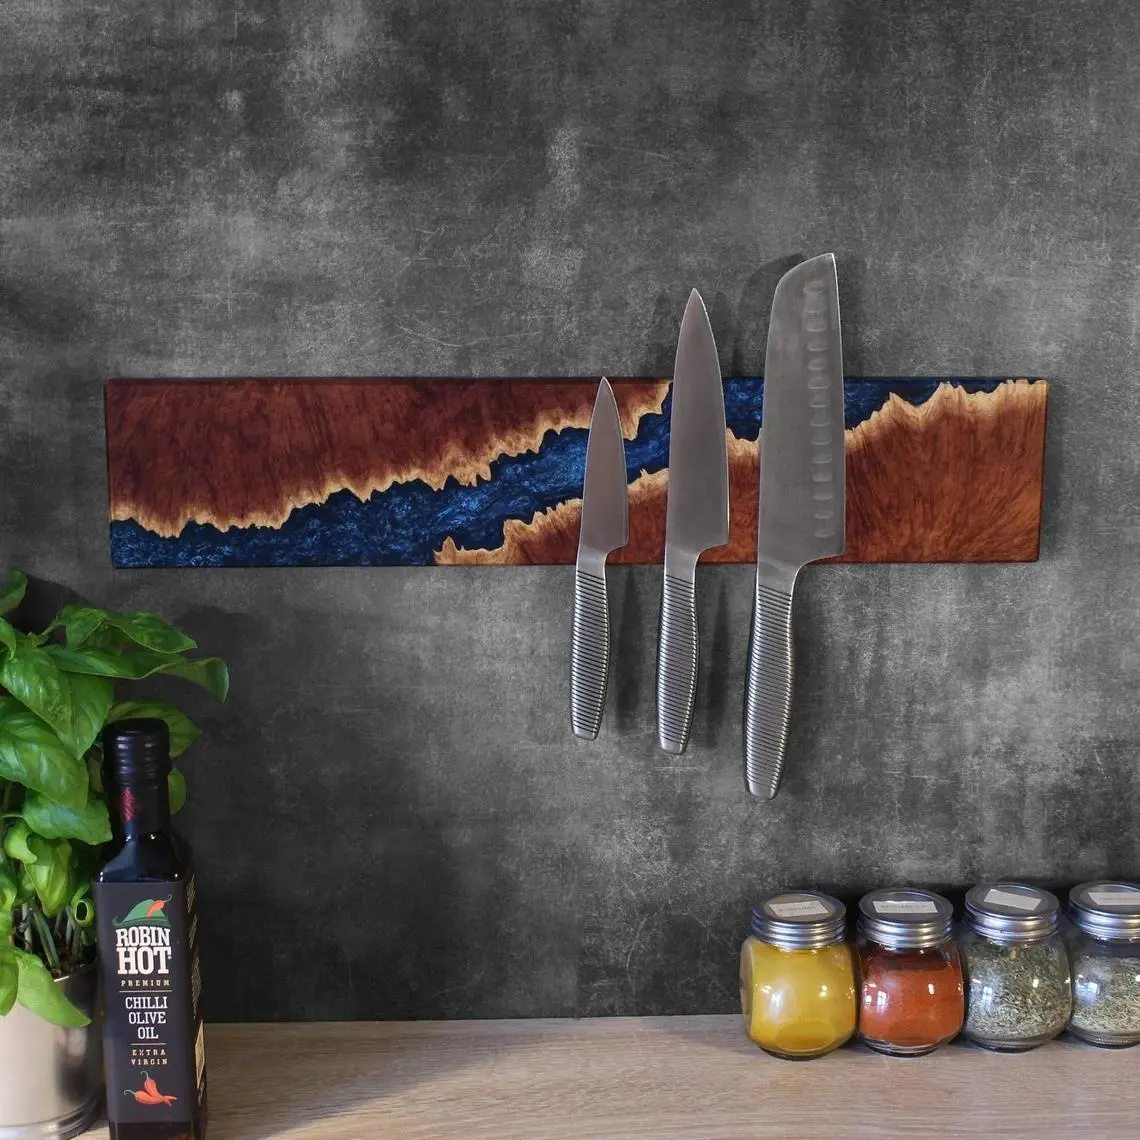 Современный речной деревянный блок для ножей из эпоксидной смолы, уникальный кухонный держатель для ножей